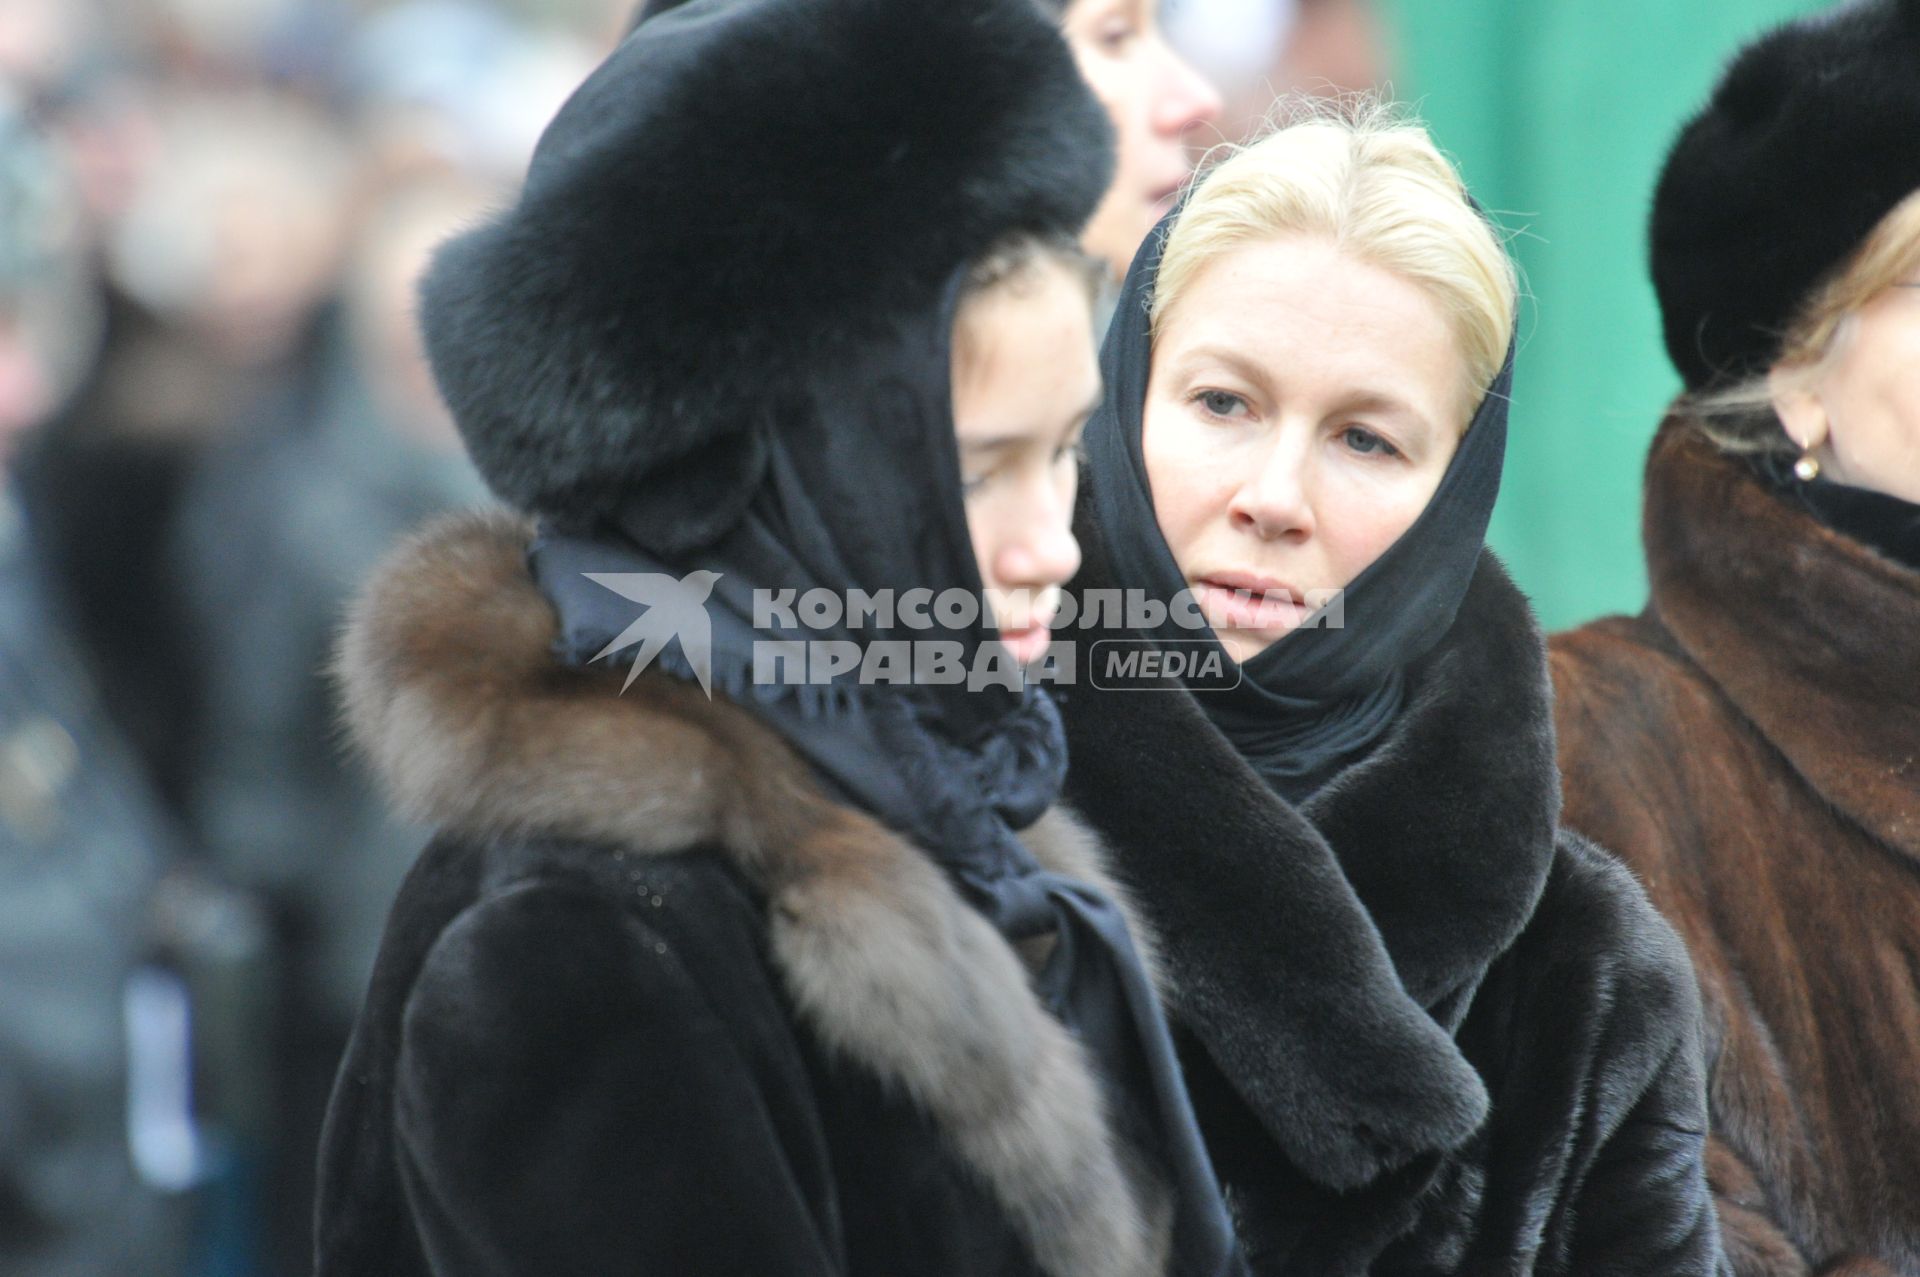 Журналистка Екатерина Одинцова с дочерью Диной Немцовой  во время похорон Бориса Немцова на Троекуровском кладбище в Москве.